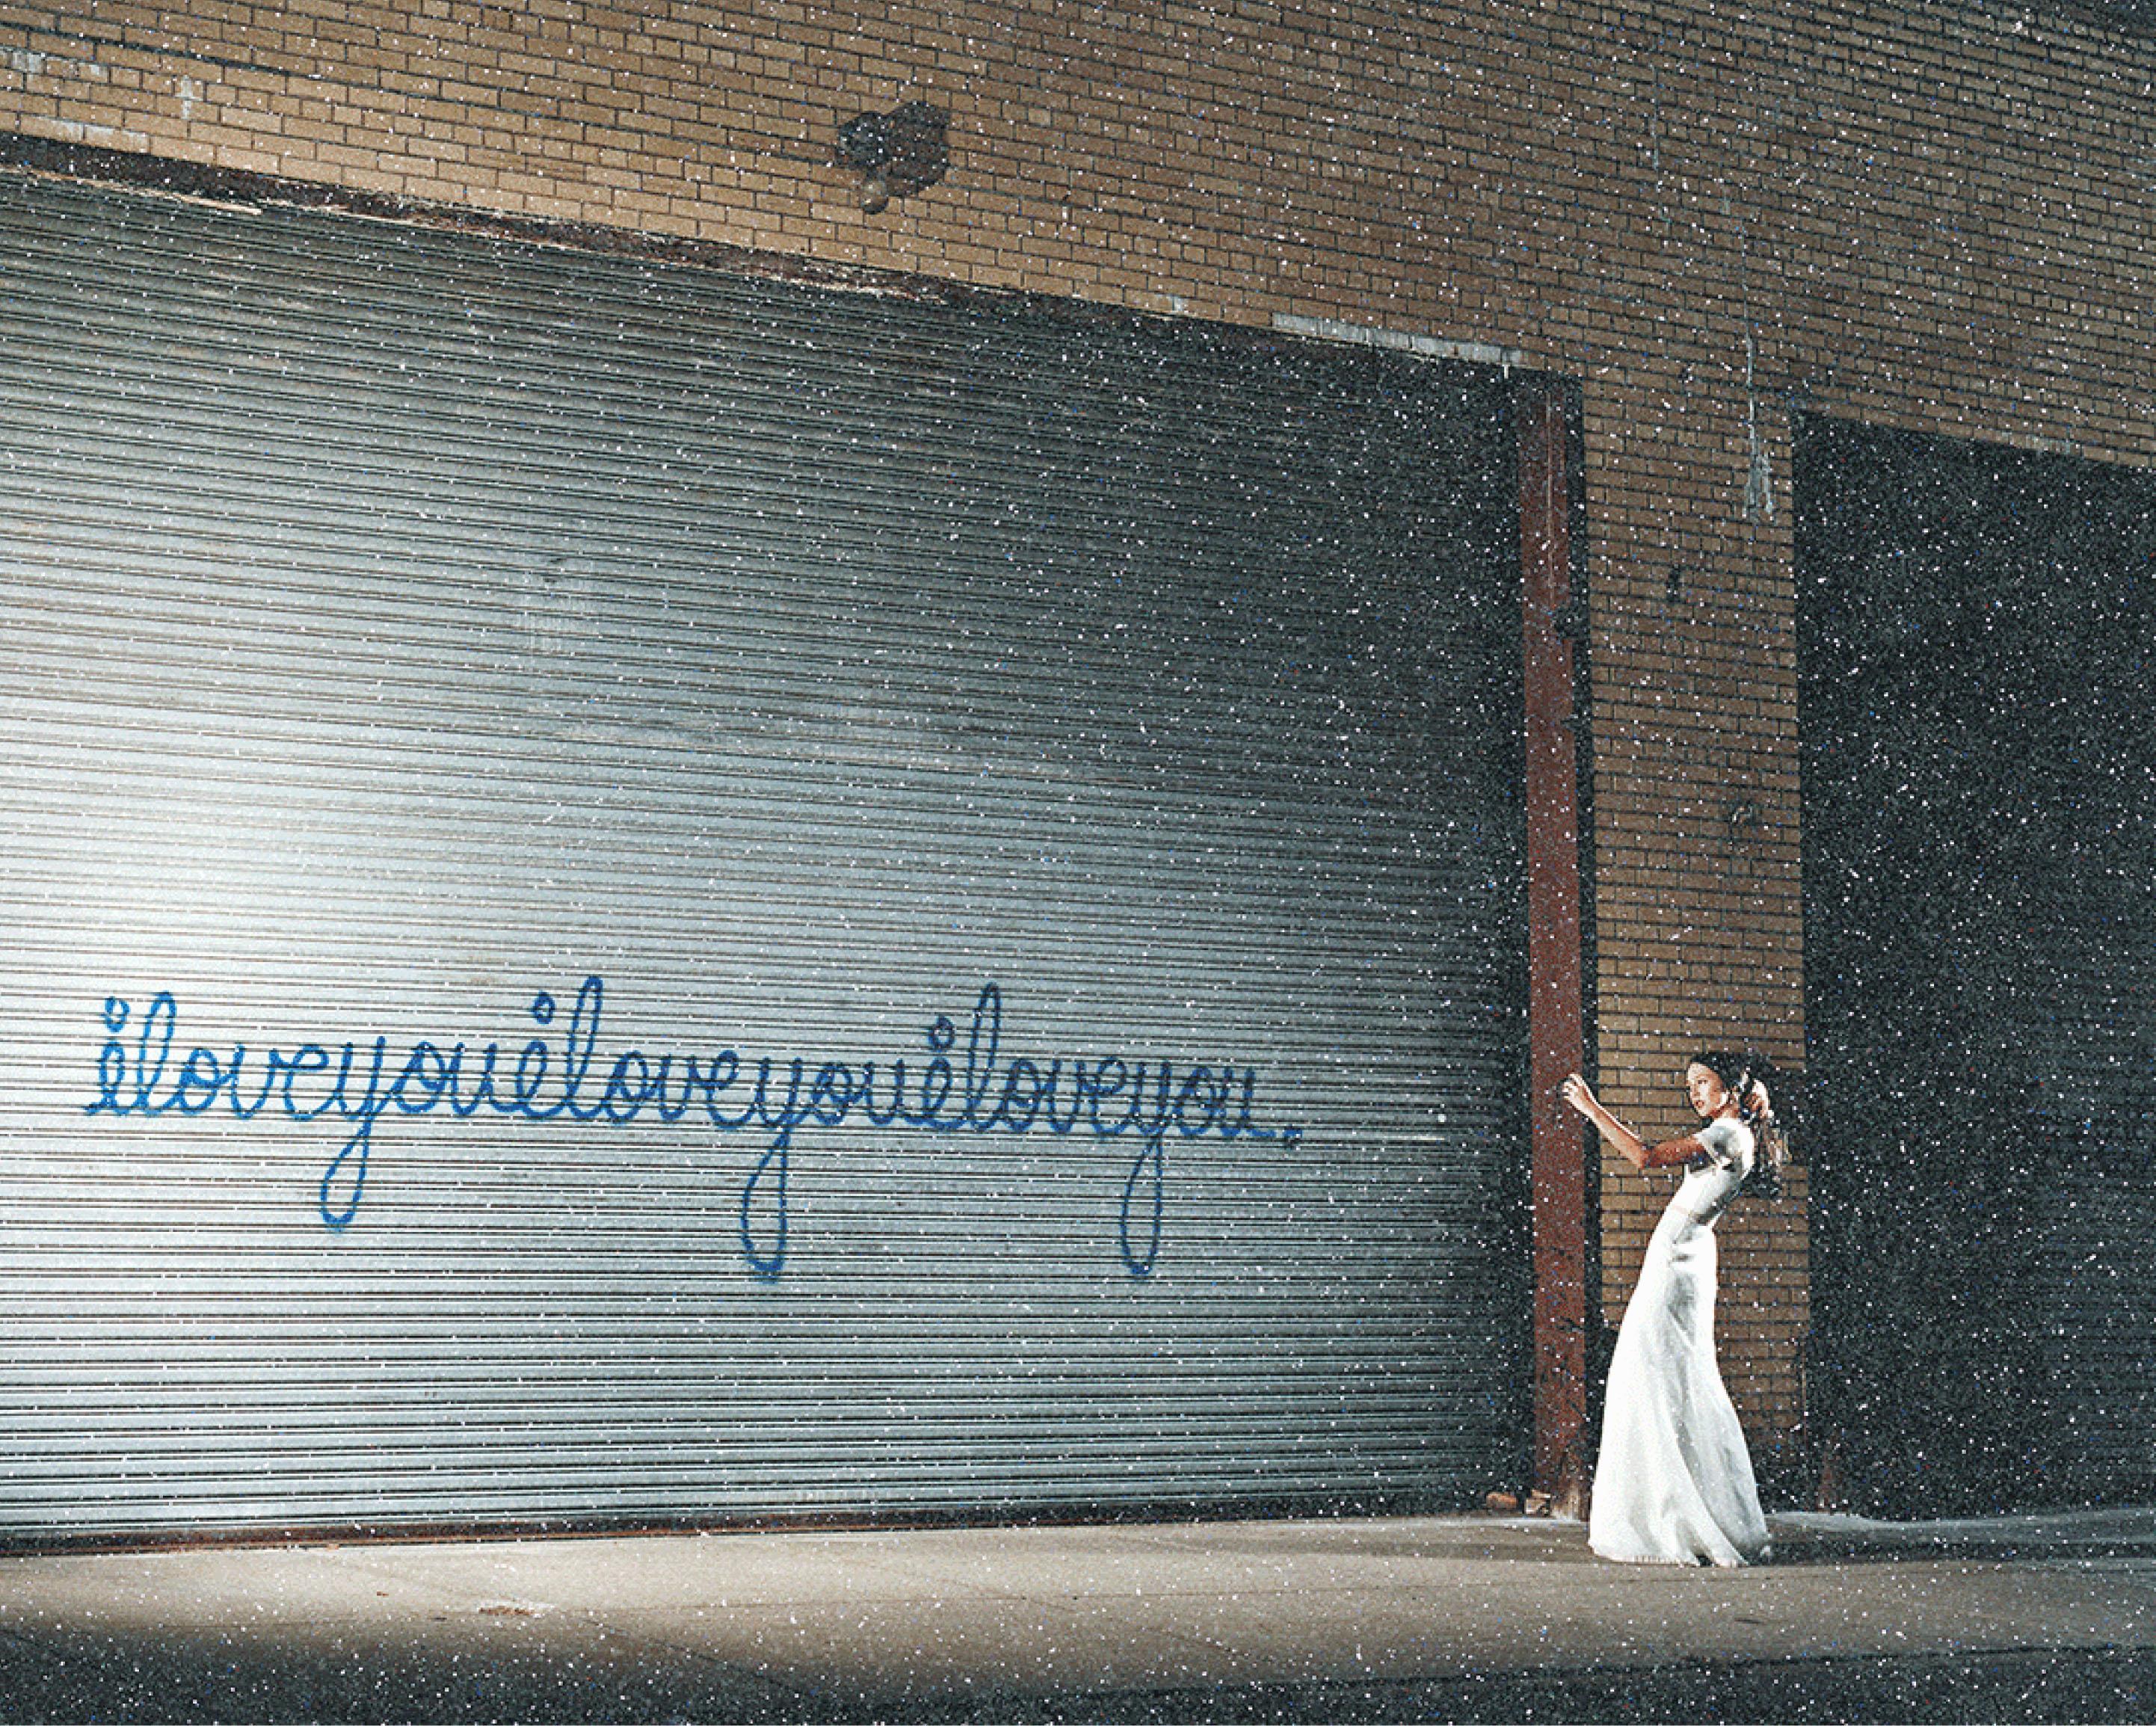 David Drebin - I LOVE YOU GIRL DIAMOND DUST, photographie 2020, imprimée d'après